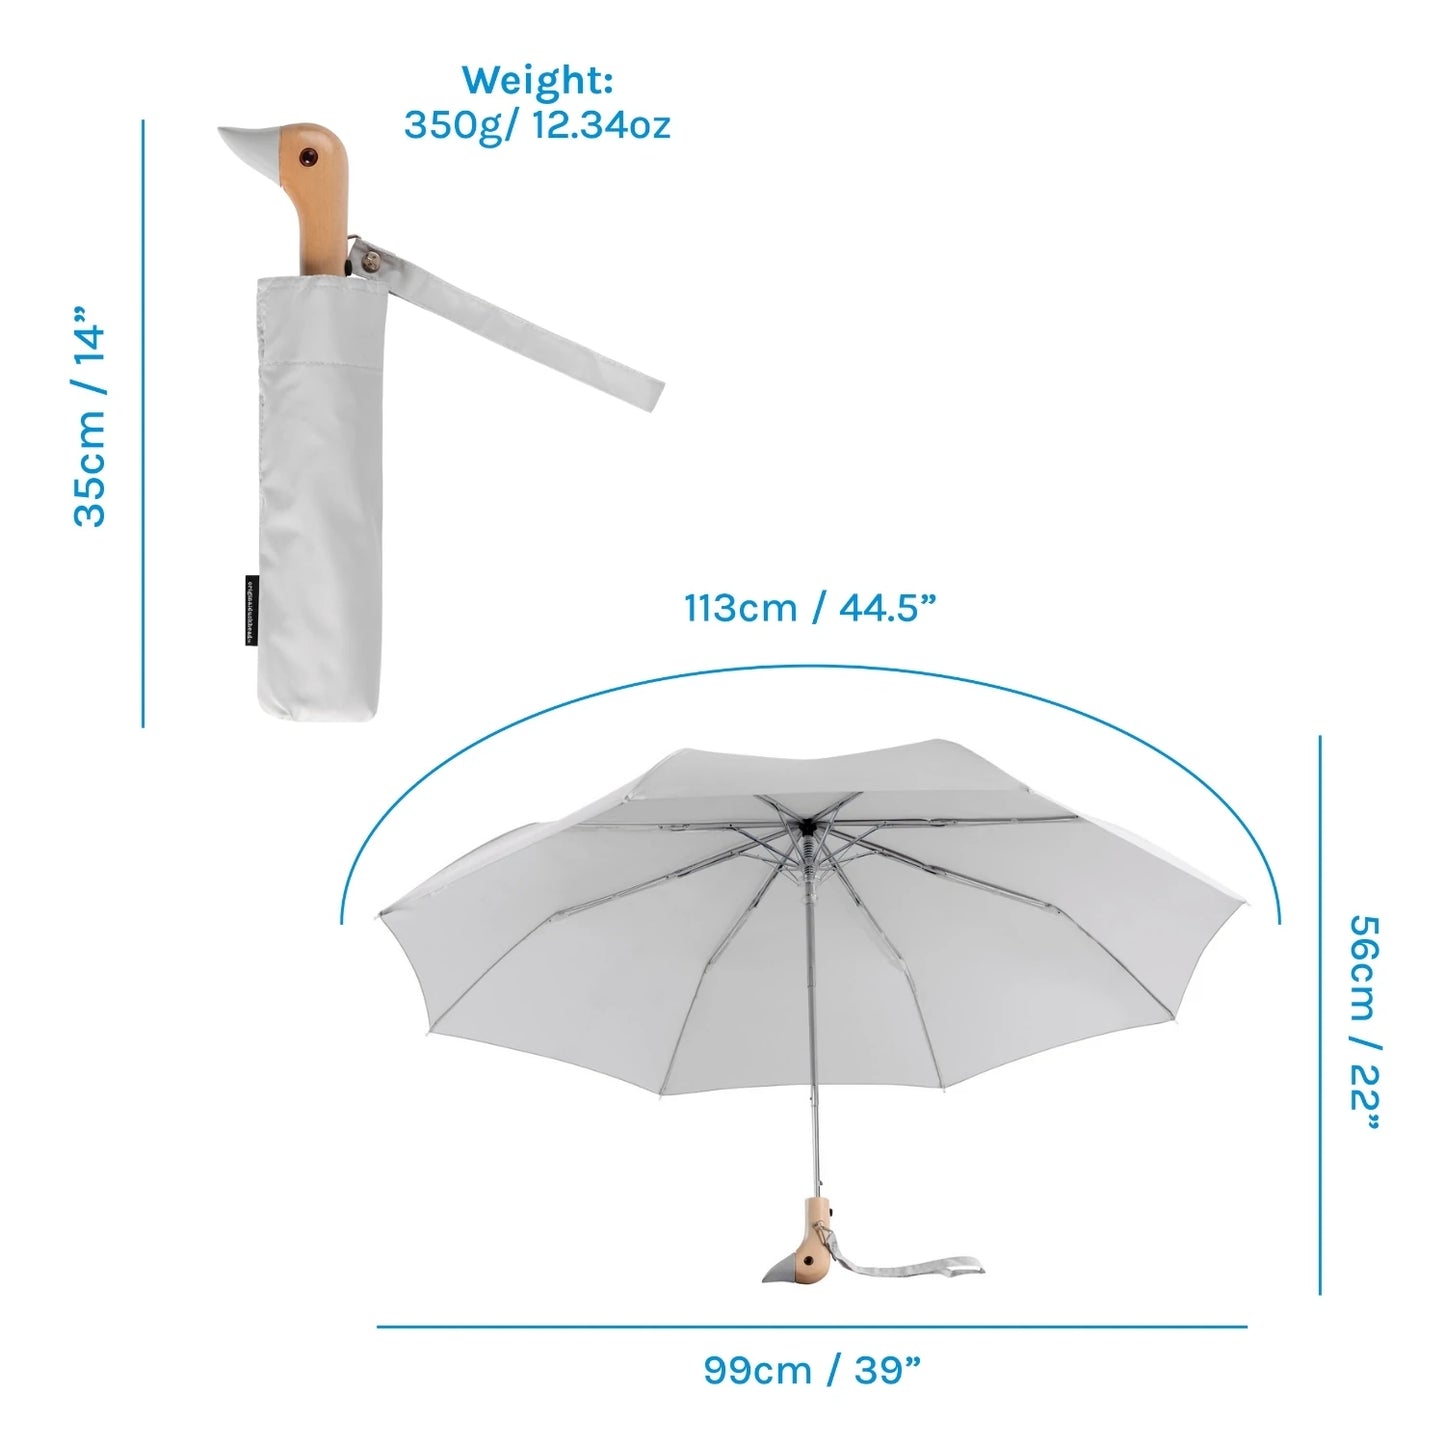 The Original Duckhead Cool Grey Umbrella